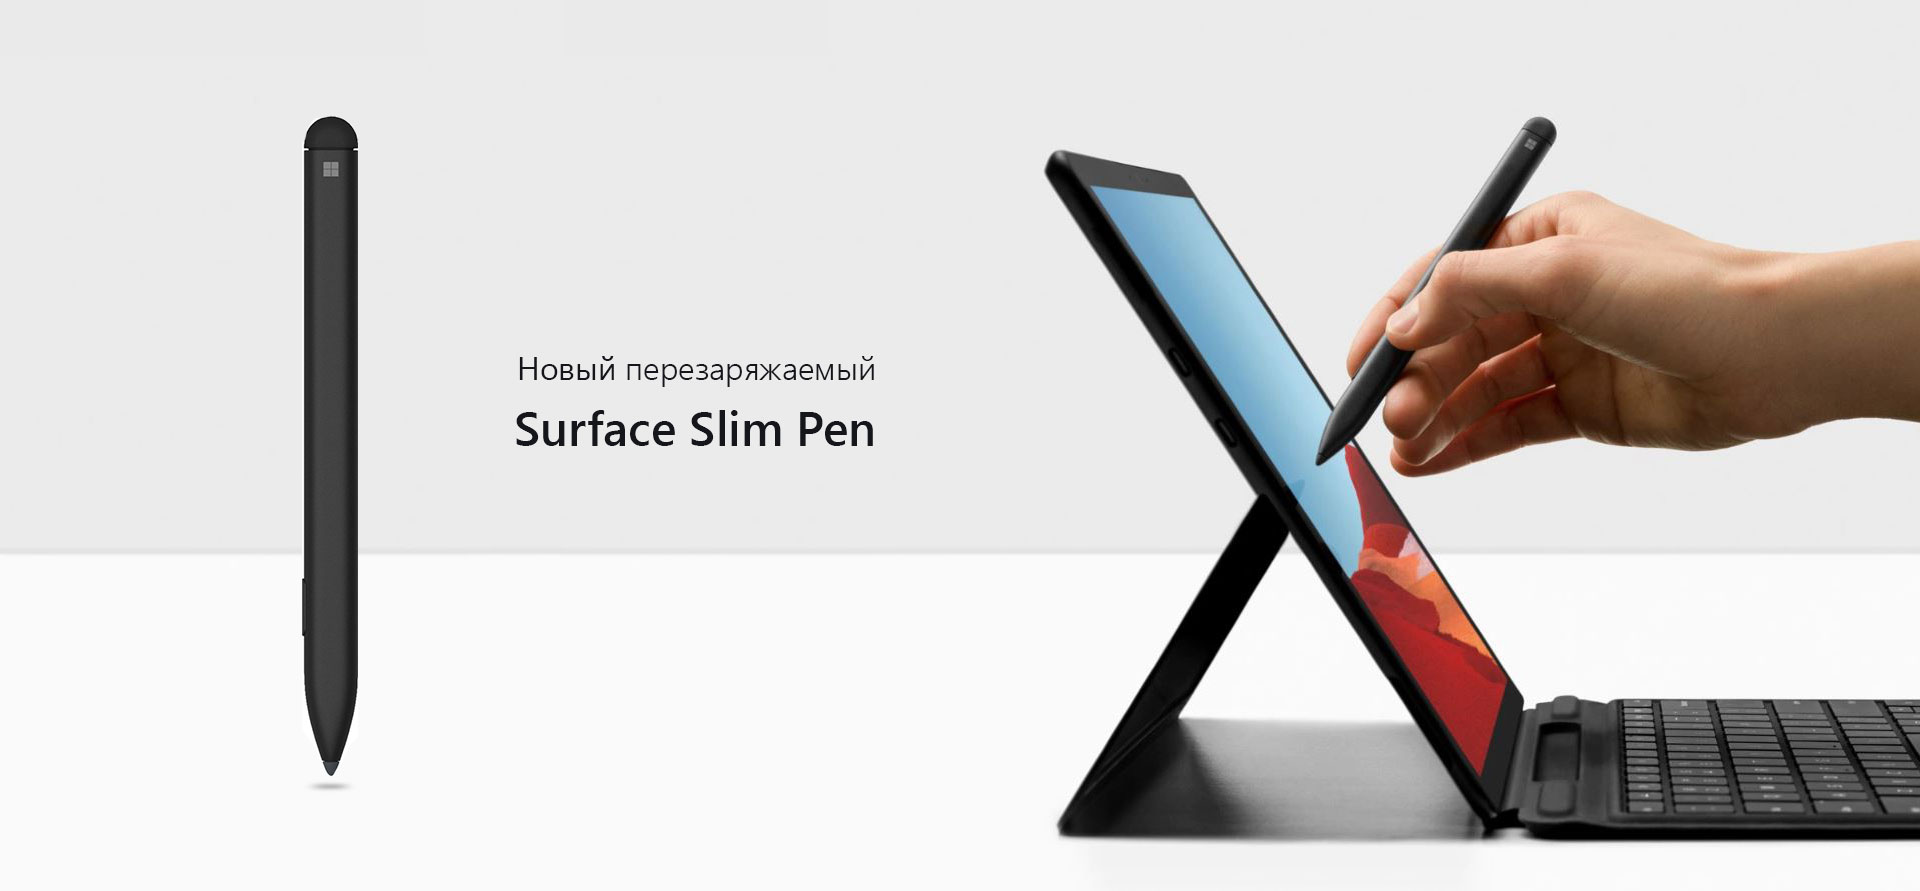 Вместе с новым стилусом Surface Slim Pen 